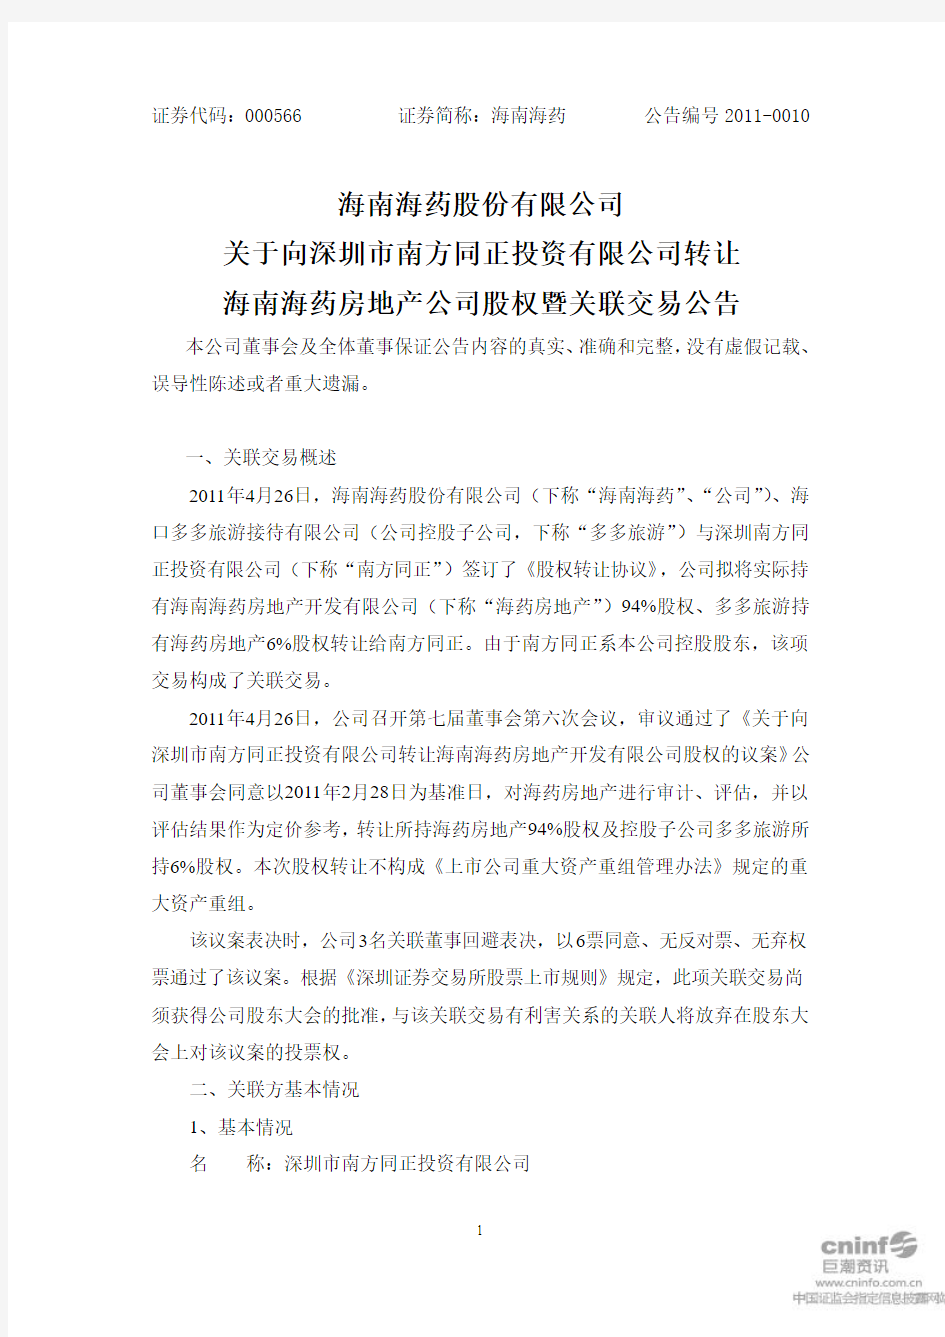 海南海药：关于向深圳市南方同正投资有限公司转让海南海药房地产公司